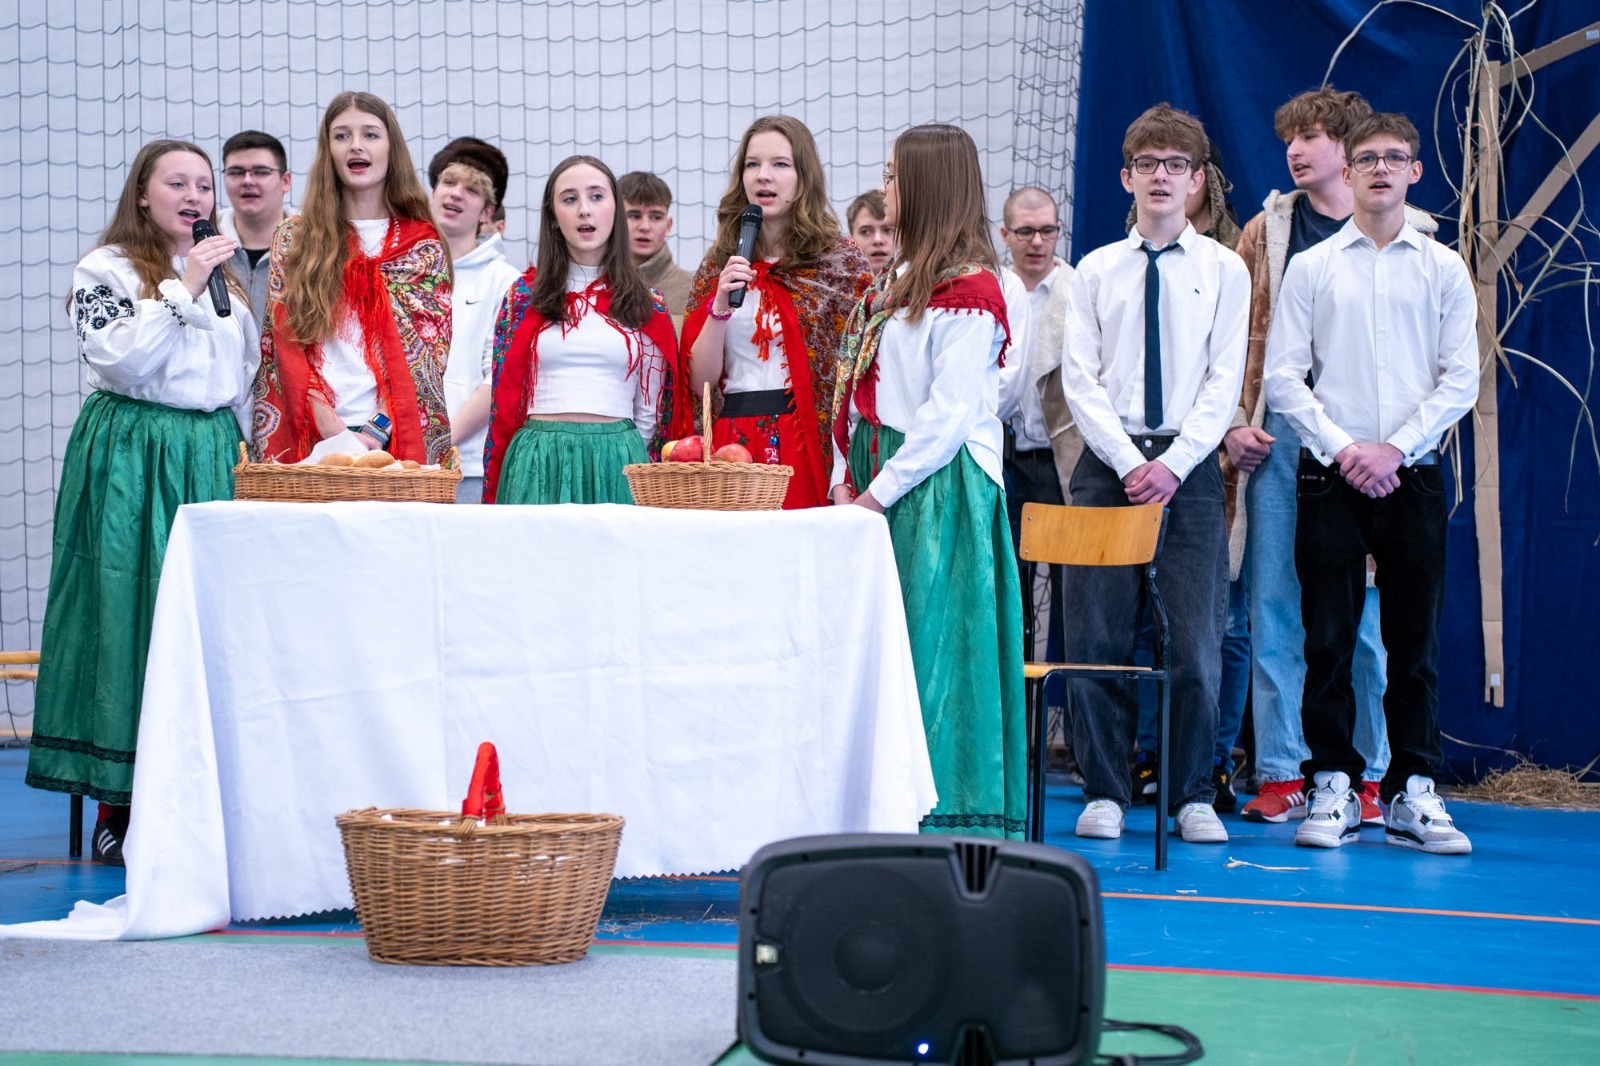 Uczniowie w trakcie przedstawienia: dziewczynki w strojach ludowych, a chłopcy ubrani na galowo stoją przy stole z białym obrusem. 